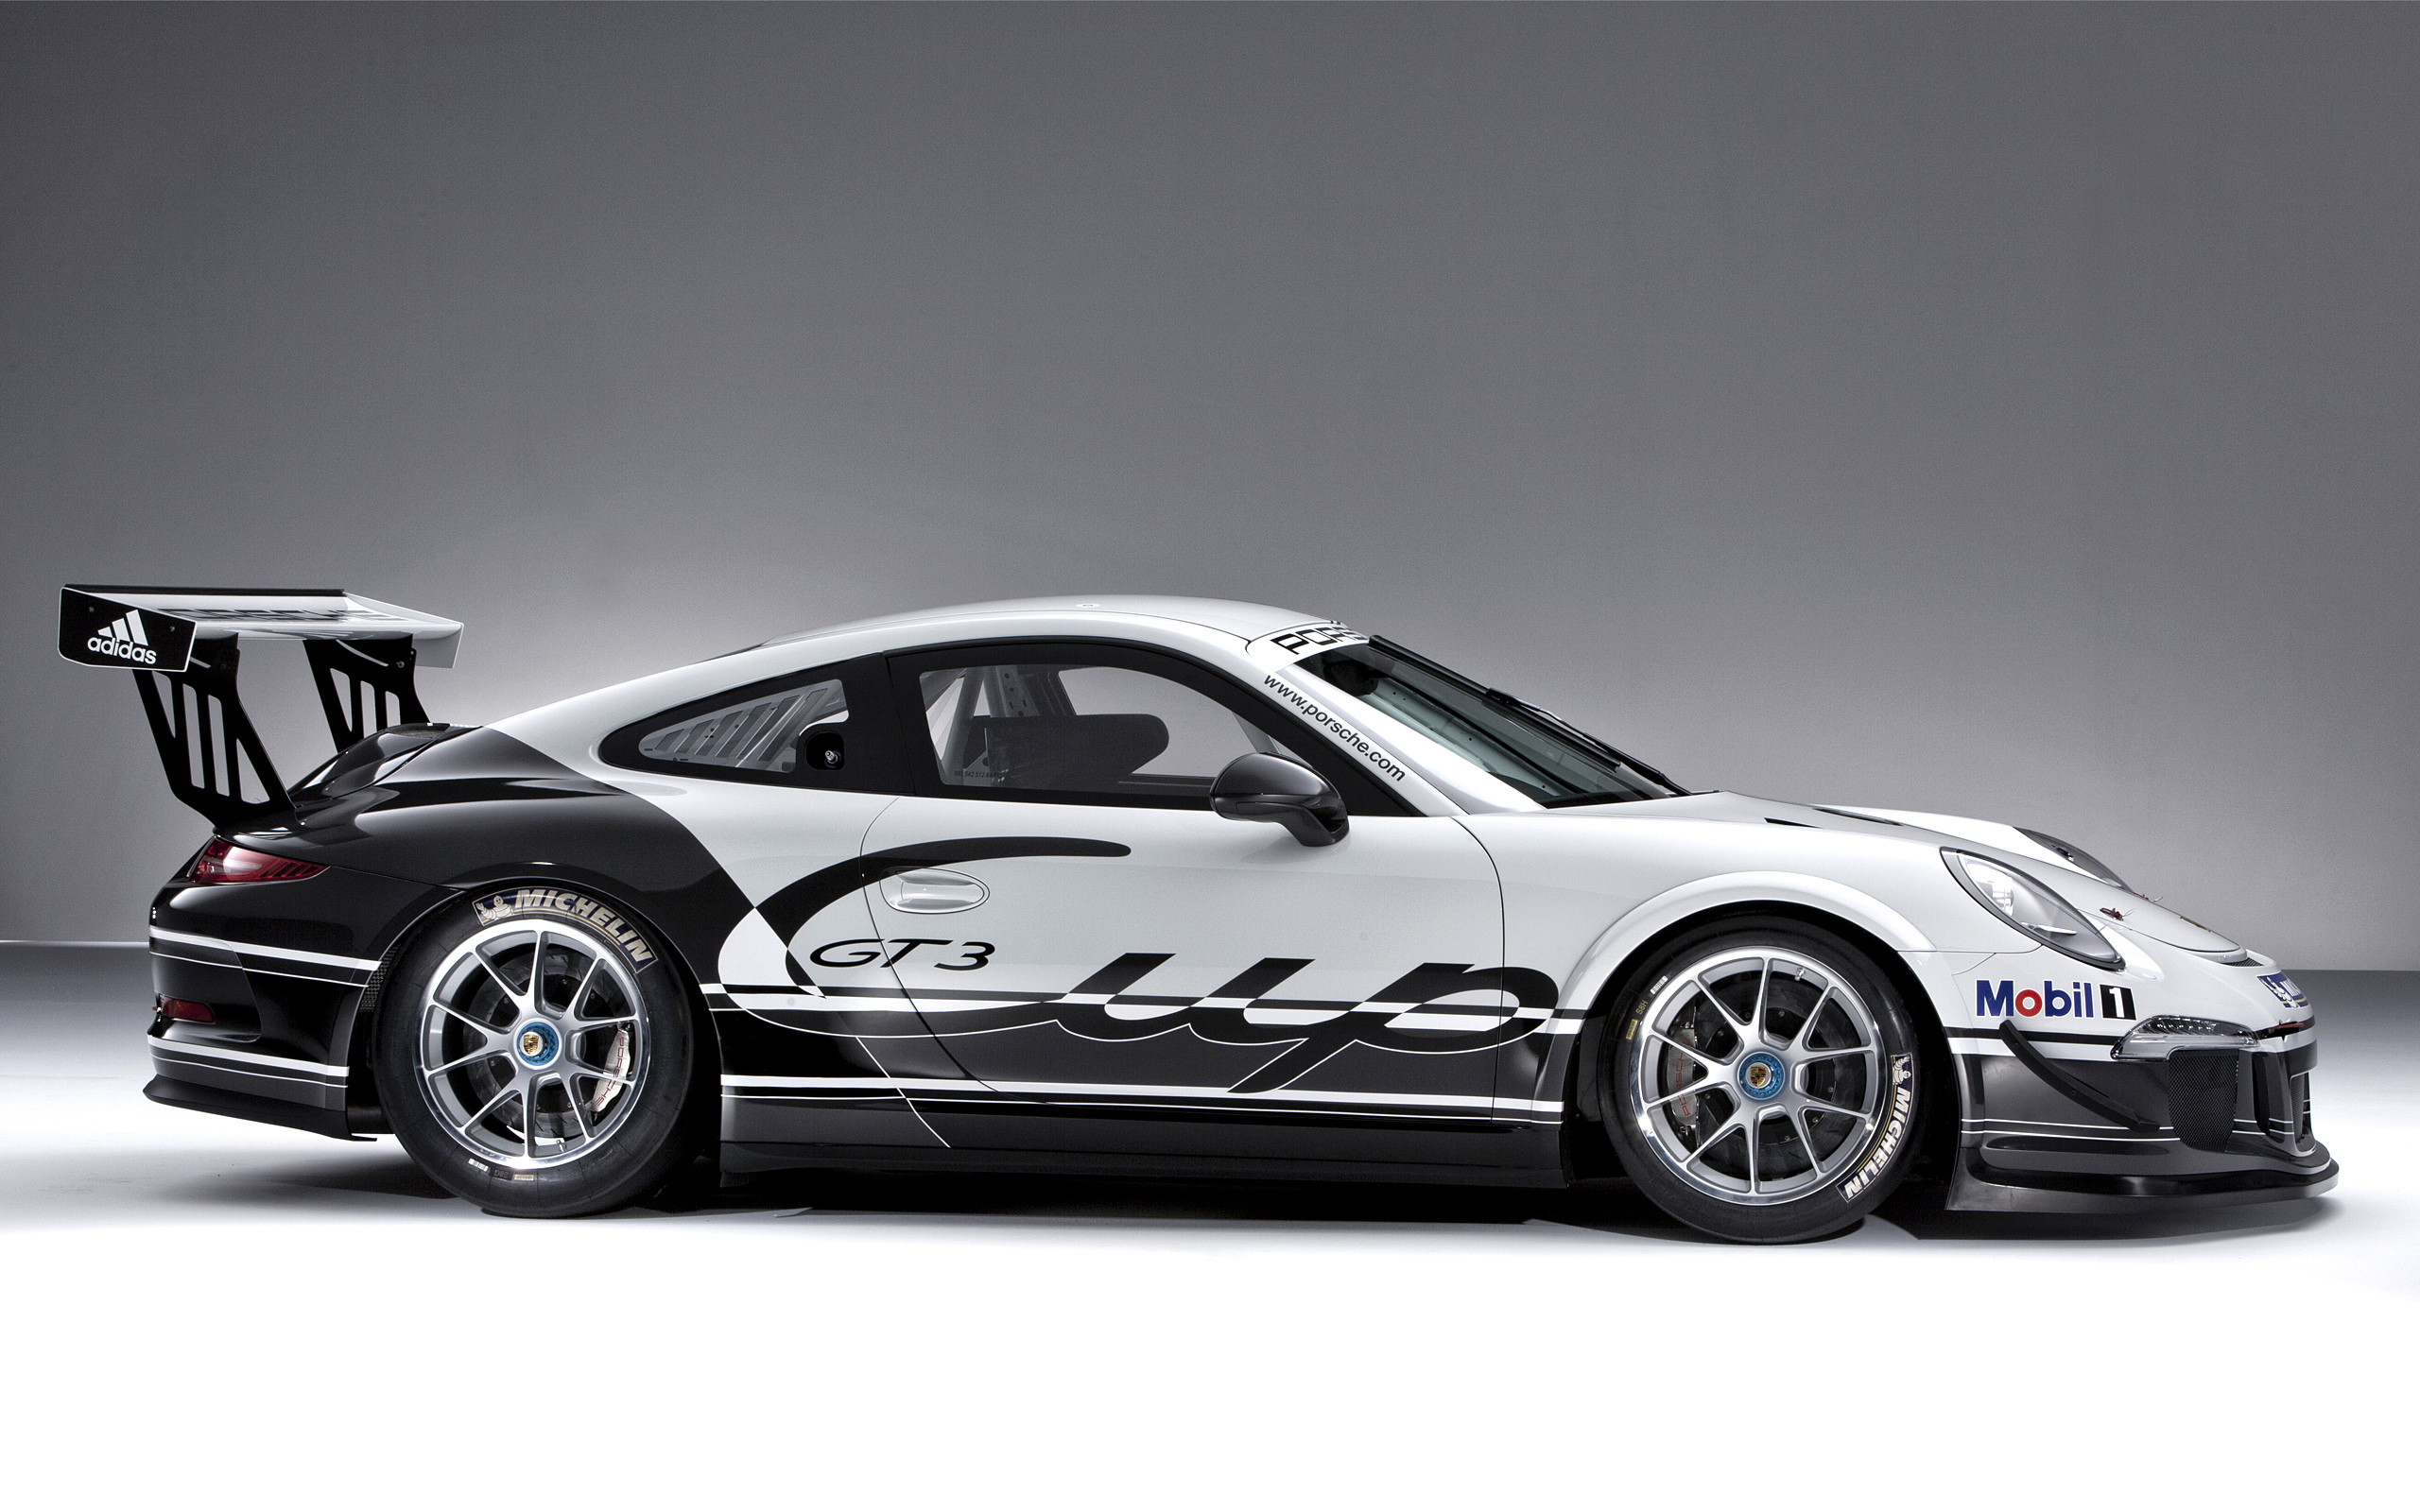  2013 Porsche 911 GT3 Cup Wallpaper.